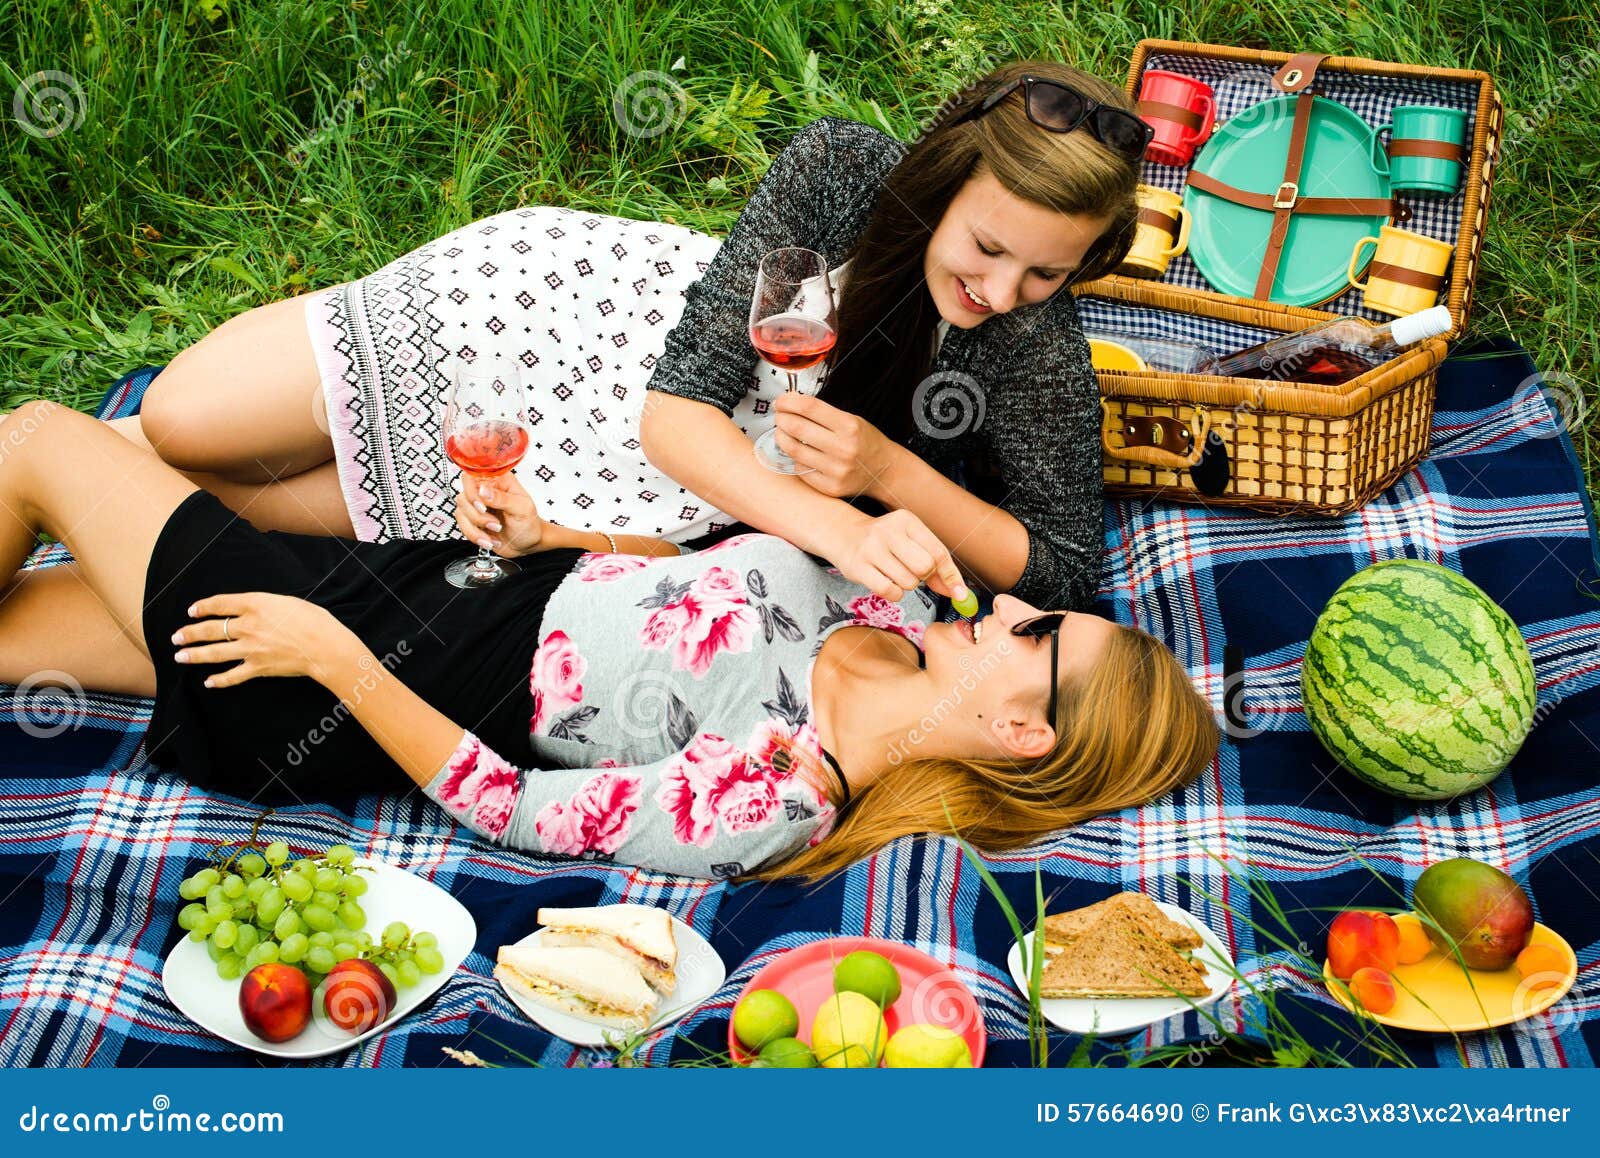 Жена друга пикник. Пикник с подругой. Девушка на пикнике. Две девушки на пикнике. Красивые девушки на пикнике.